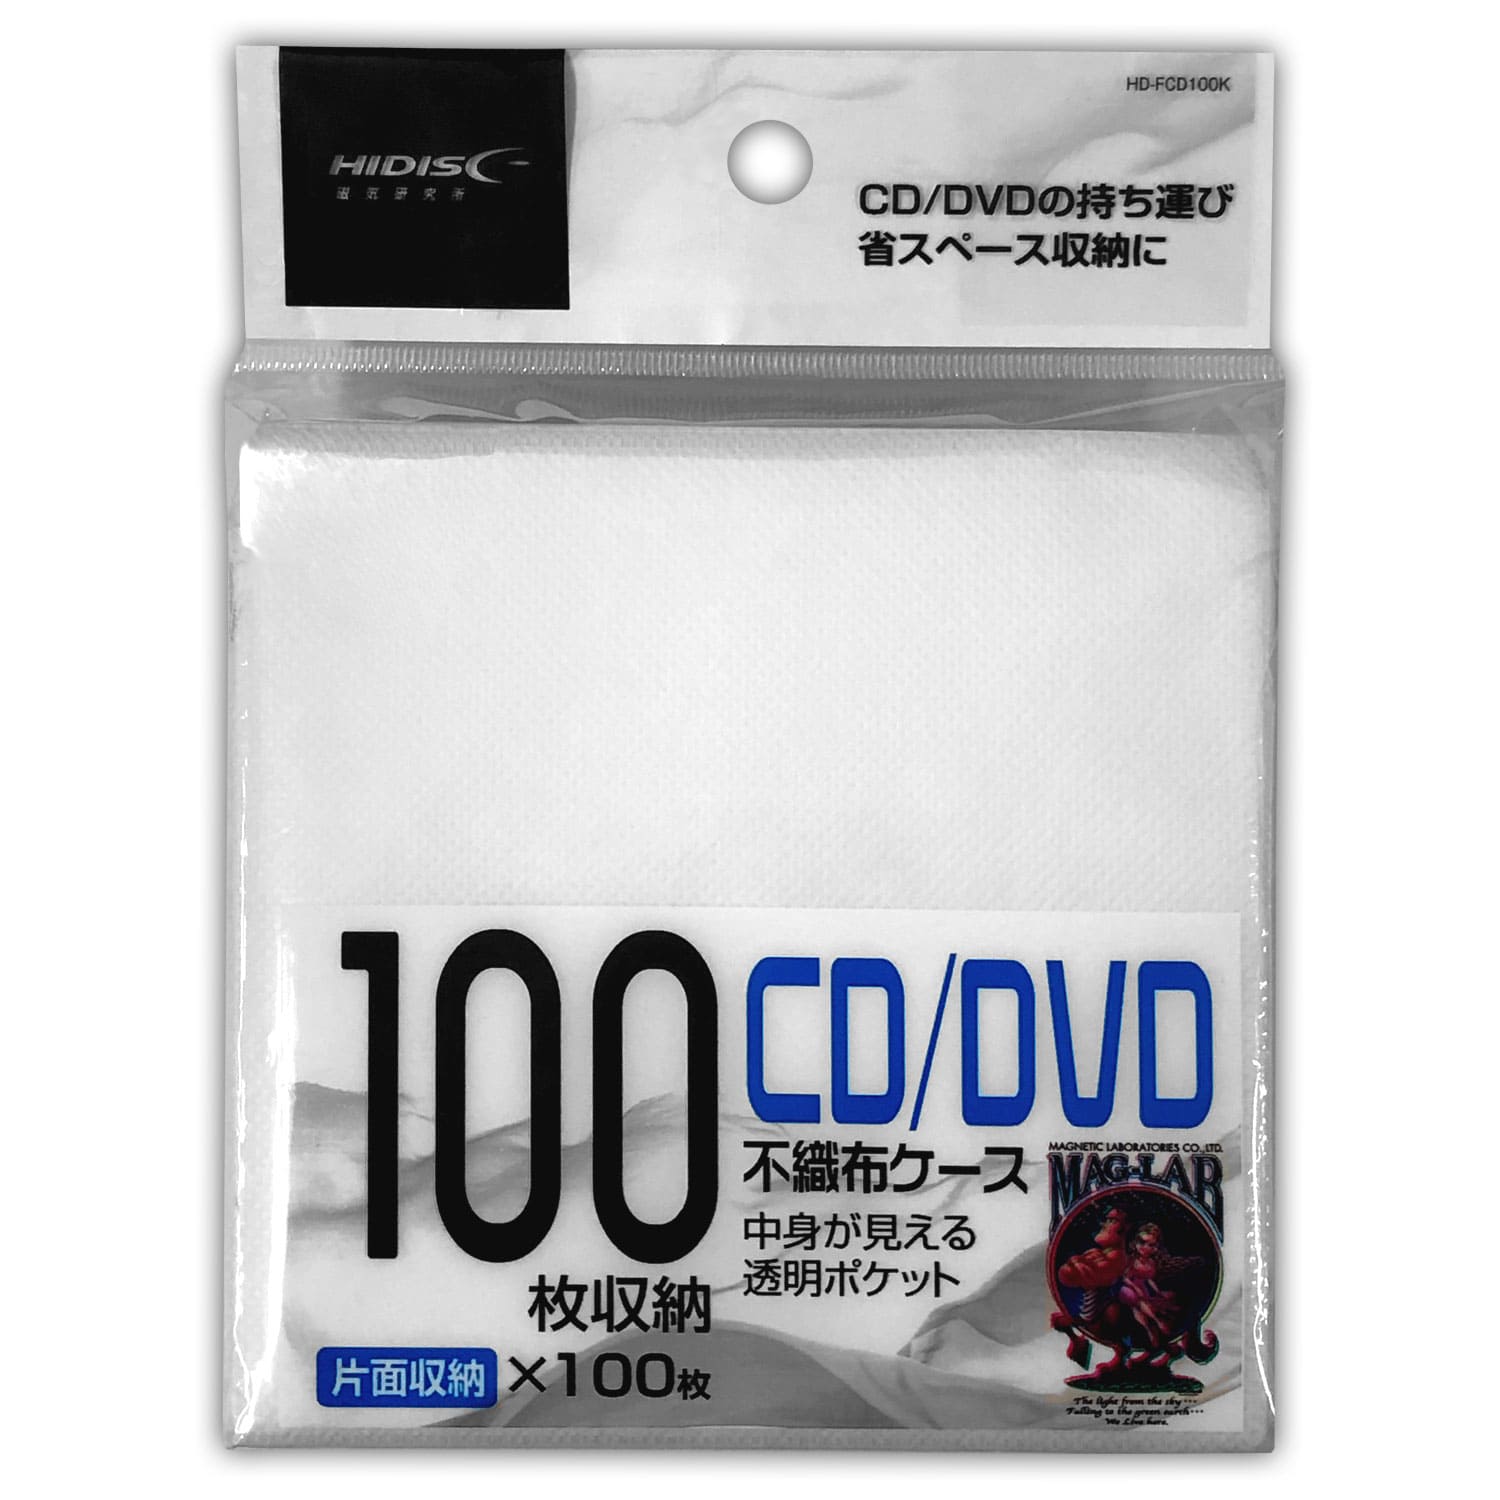 片面不織布(白)100枚収納 CD、DVDケース HIDISC 株式会社磁気研究所